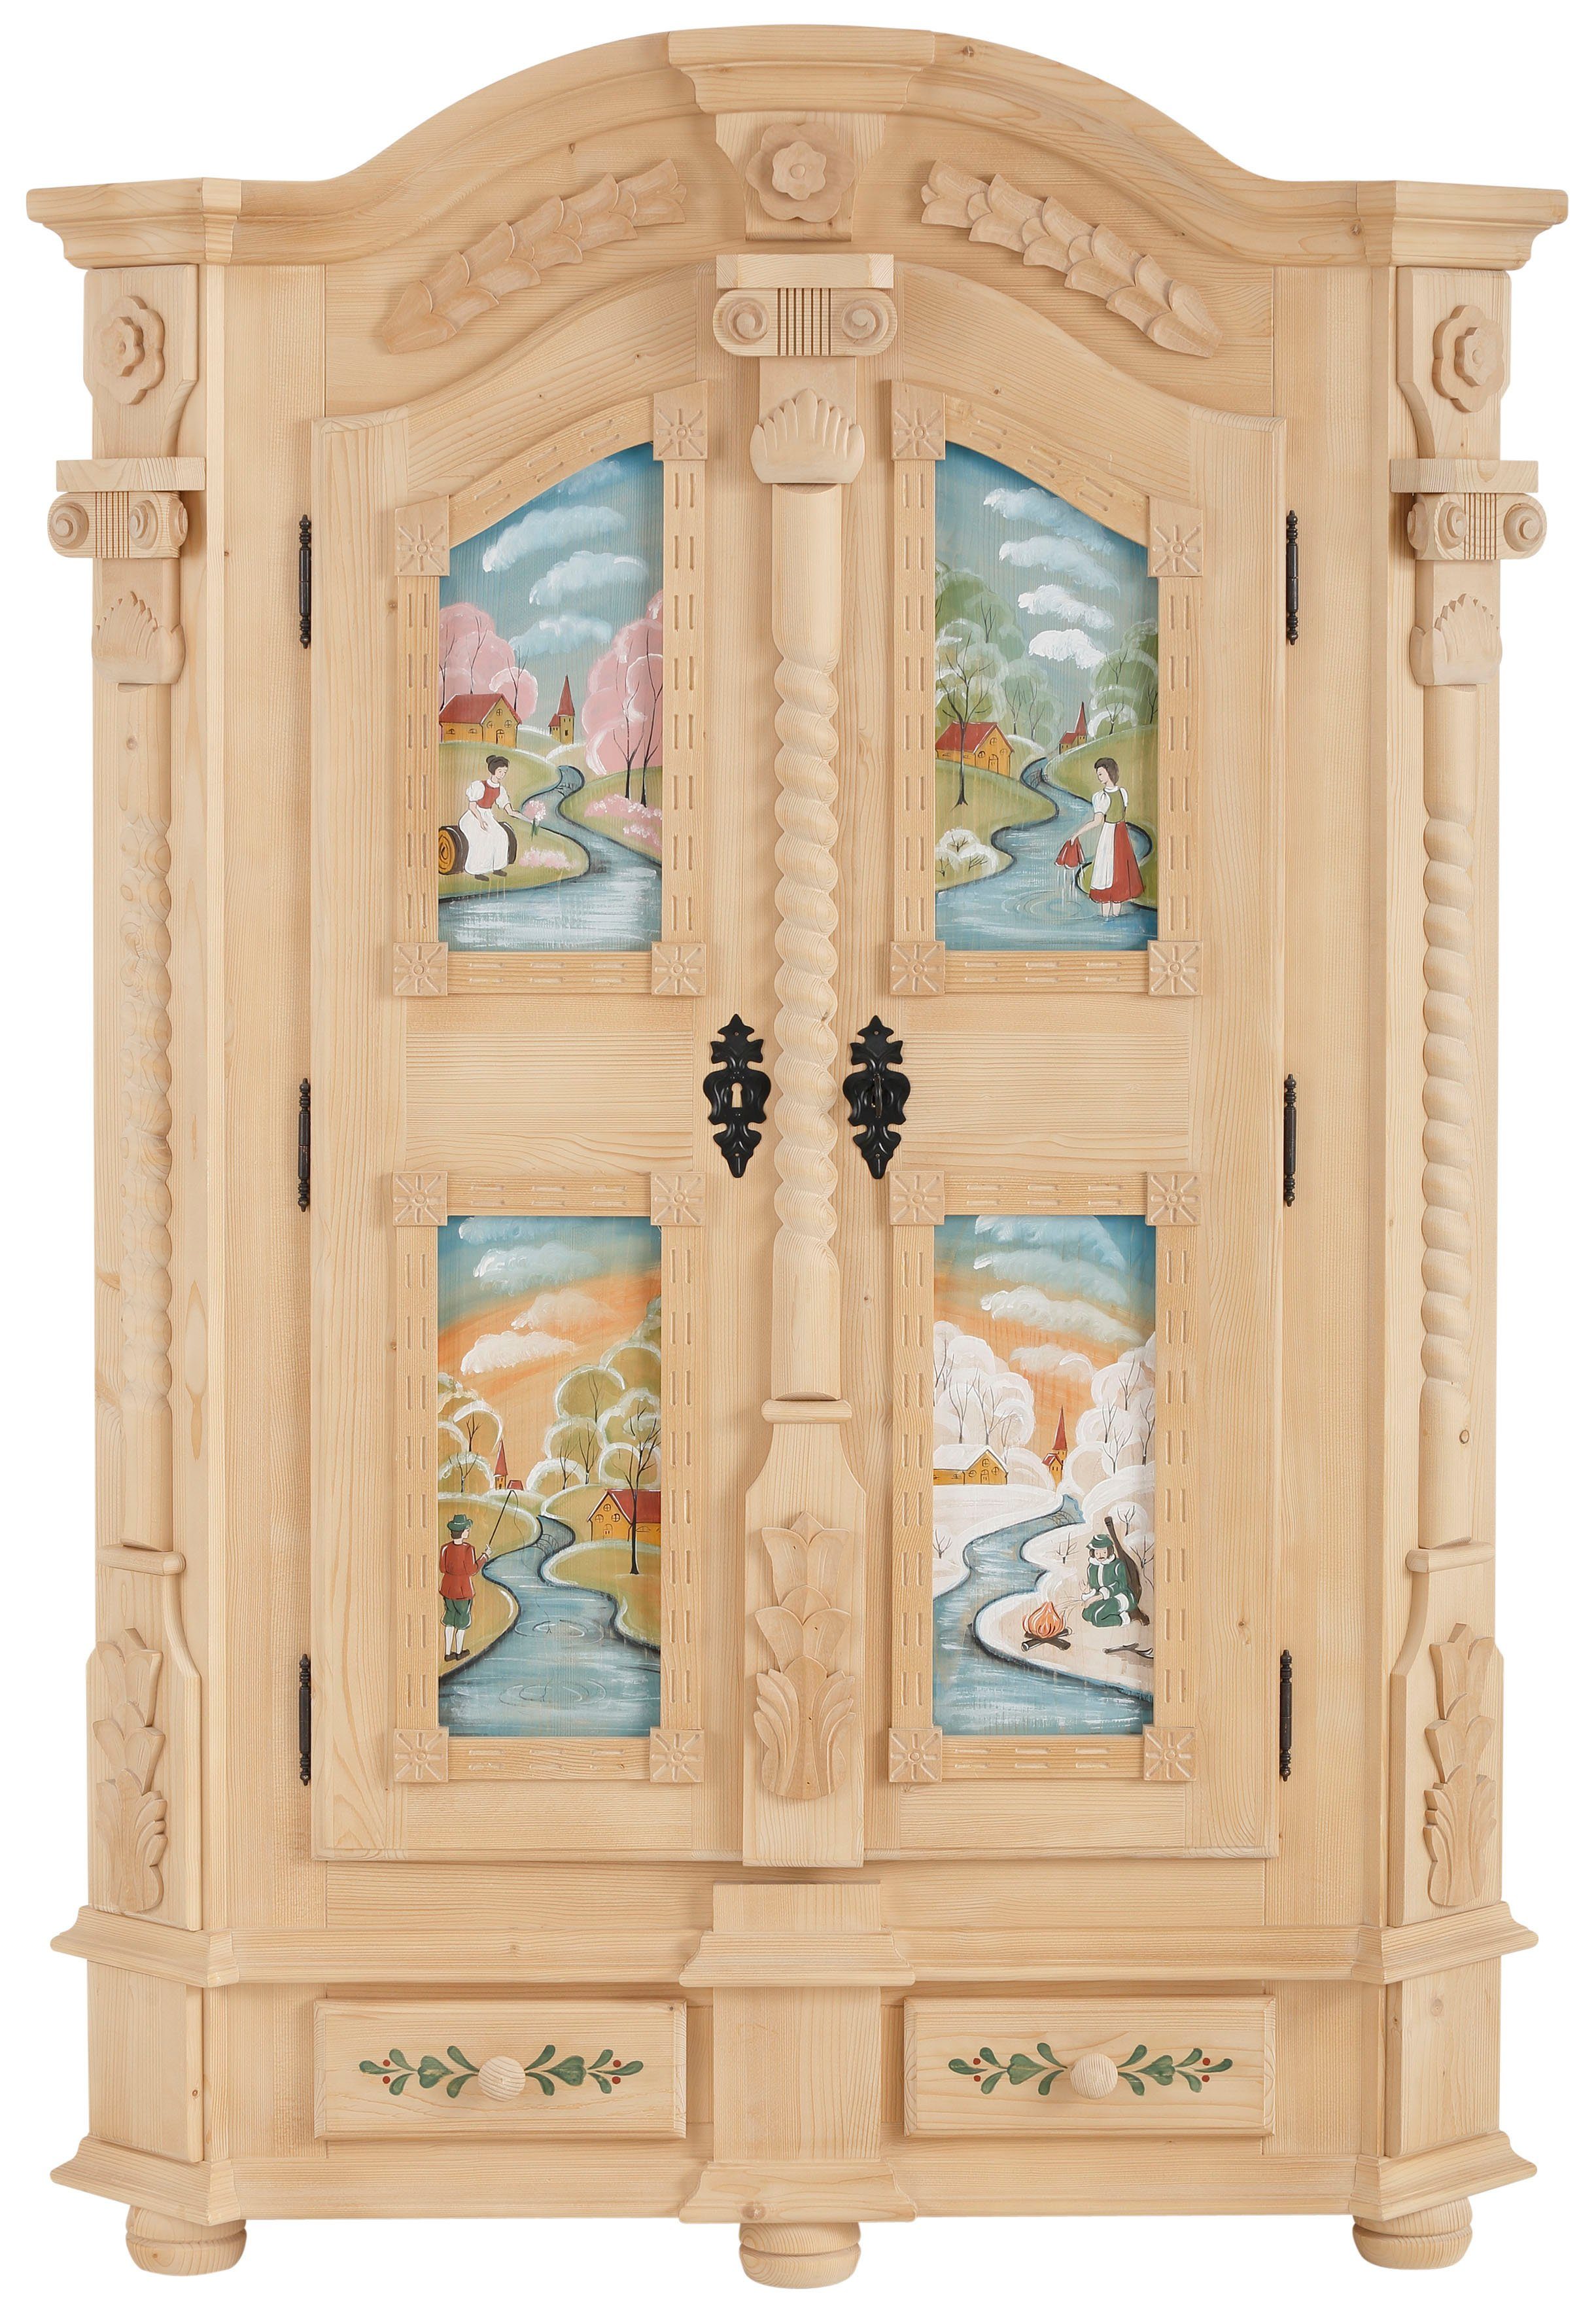 Premium collection by Home affaire Kledingkast Teisendorf met bijzondere met de hand beschilderde deurfronten en mooie ornamenten, hoogte 189 cm